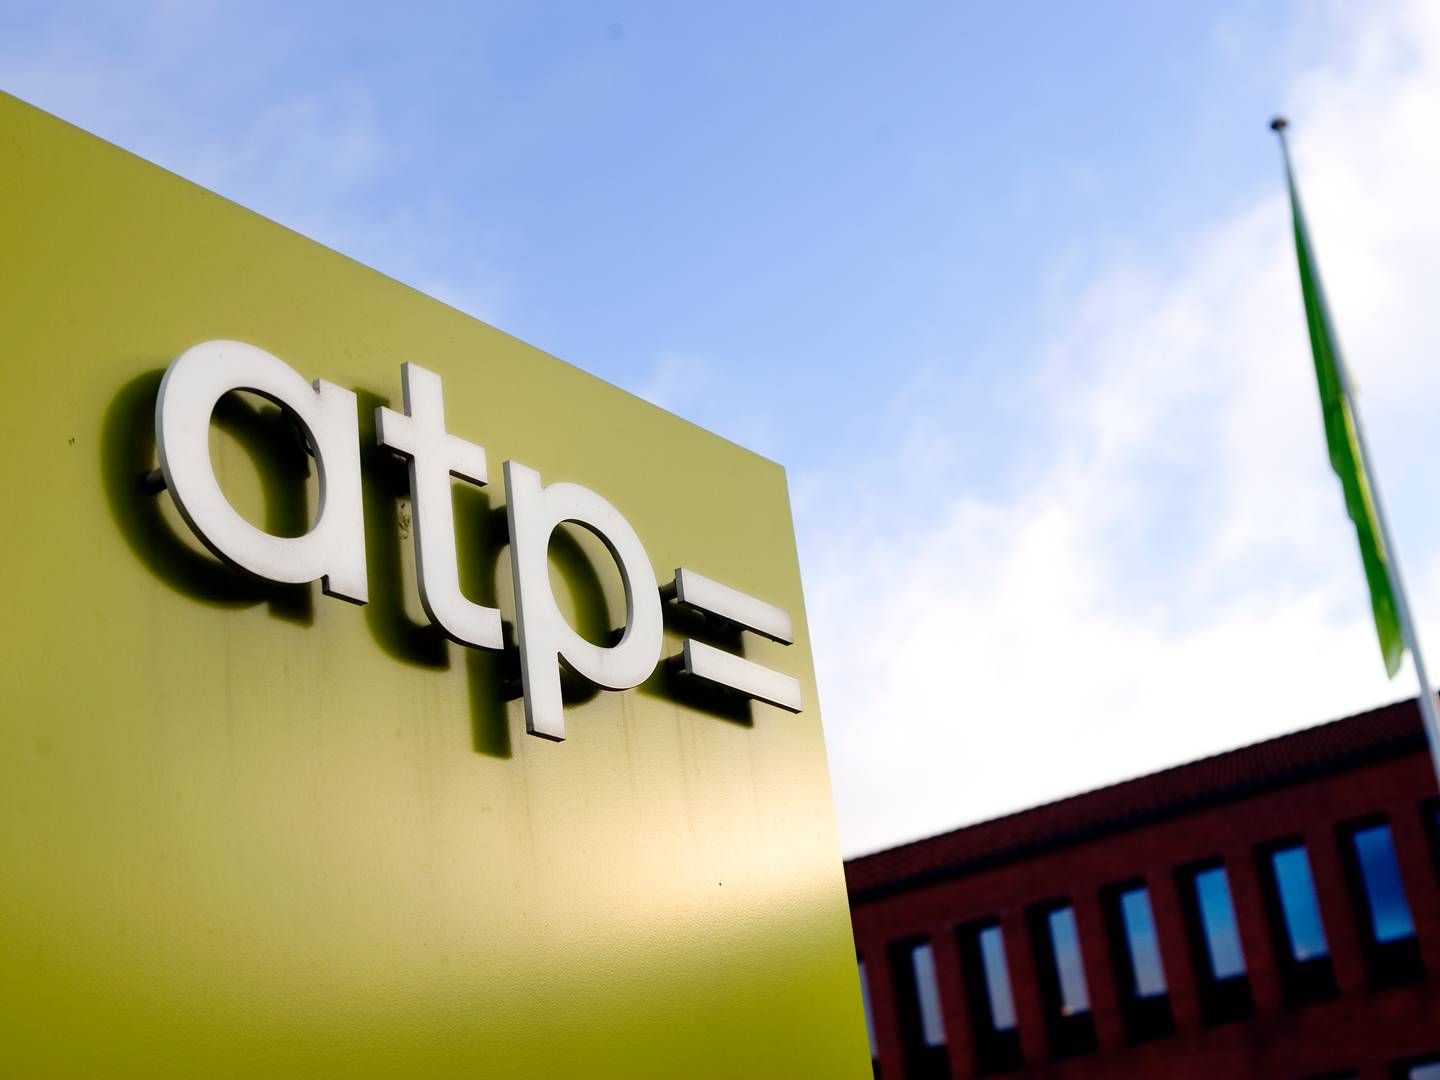 ATP, som har hovedsæde i Hillerød, blev etableret i 1964. | Foto: Thomas Borberg/Politiken/Ritzau Scanpix